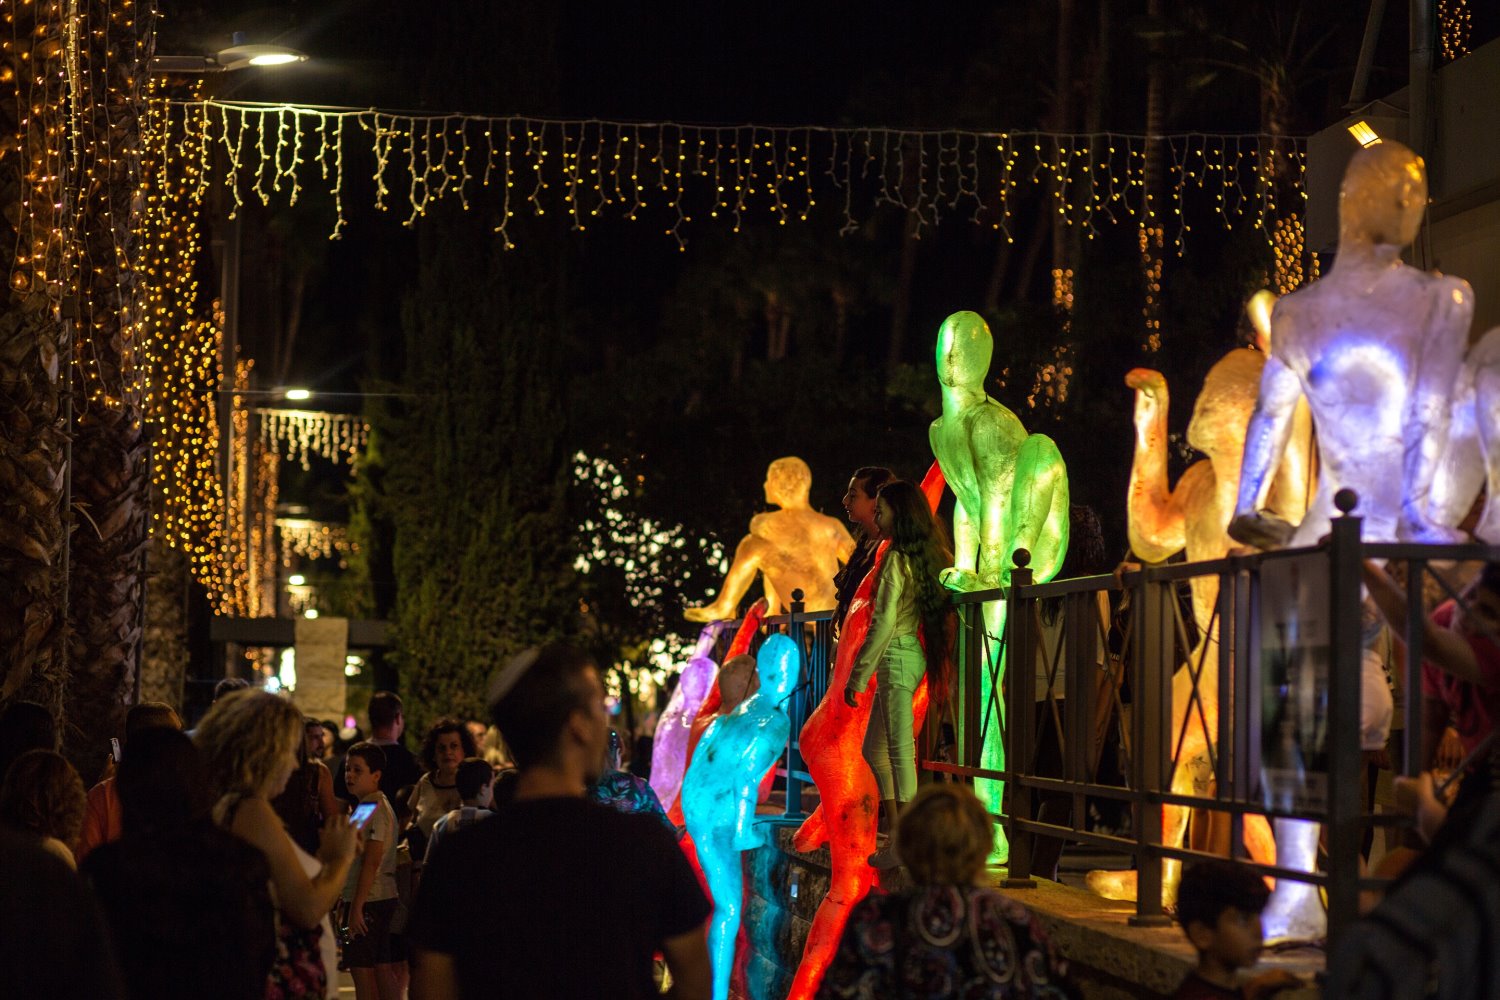 פסטיבל פרינגסטייל אור באשדוד | צילום: אלון בירגר